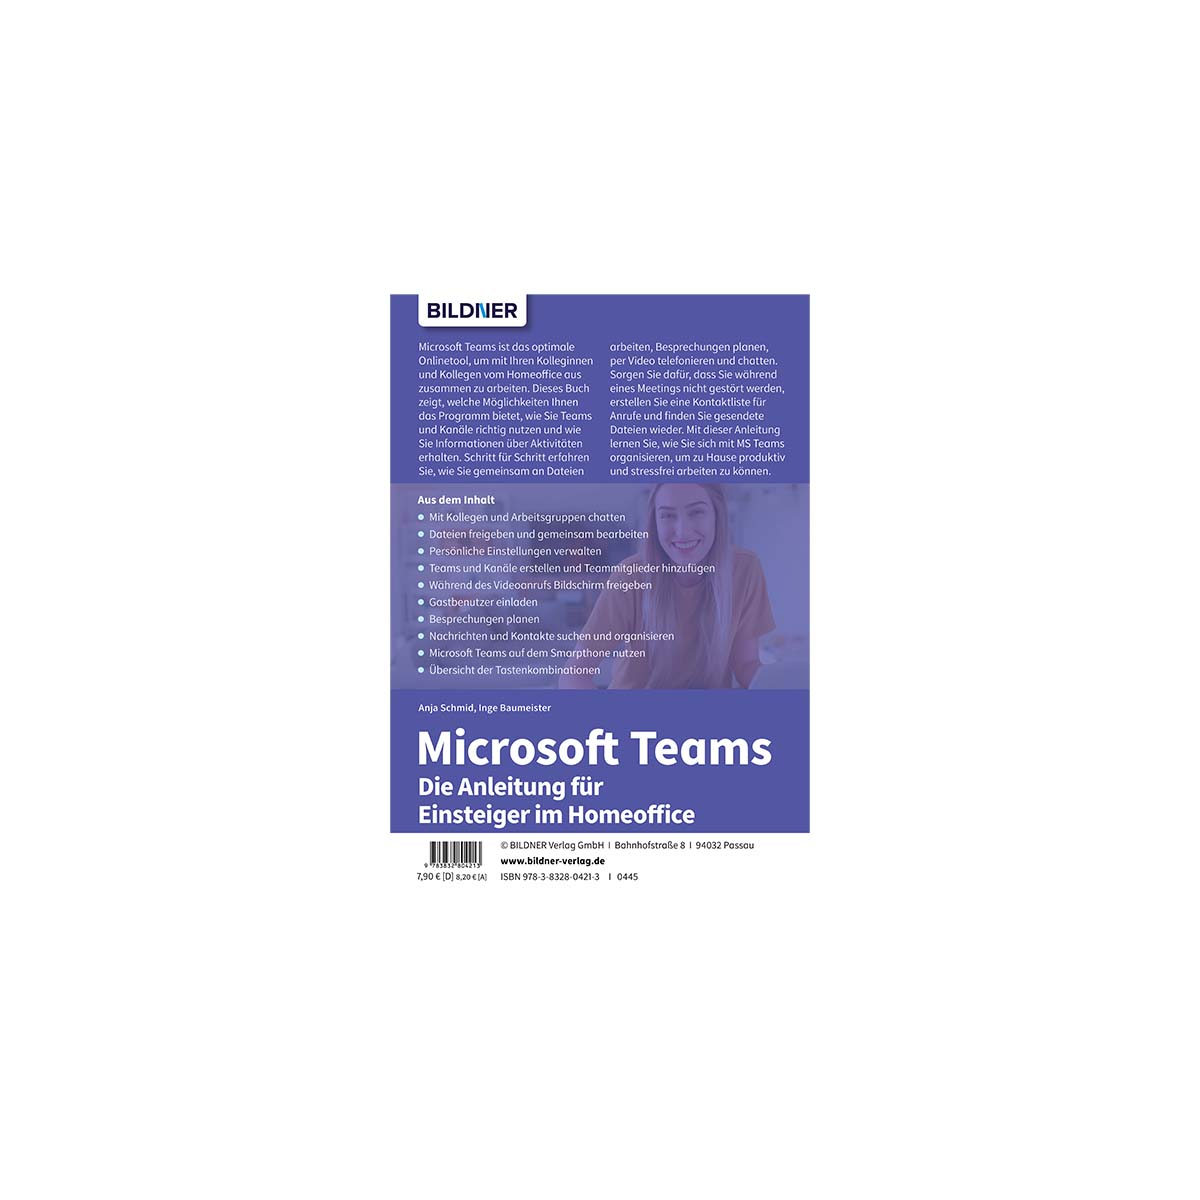 Teams Microsoft Einsteiger - Homeoffice Die im Anleitung für